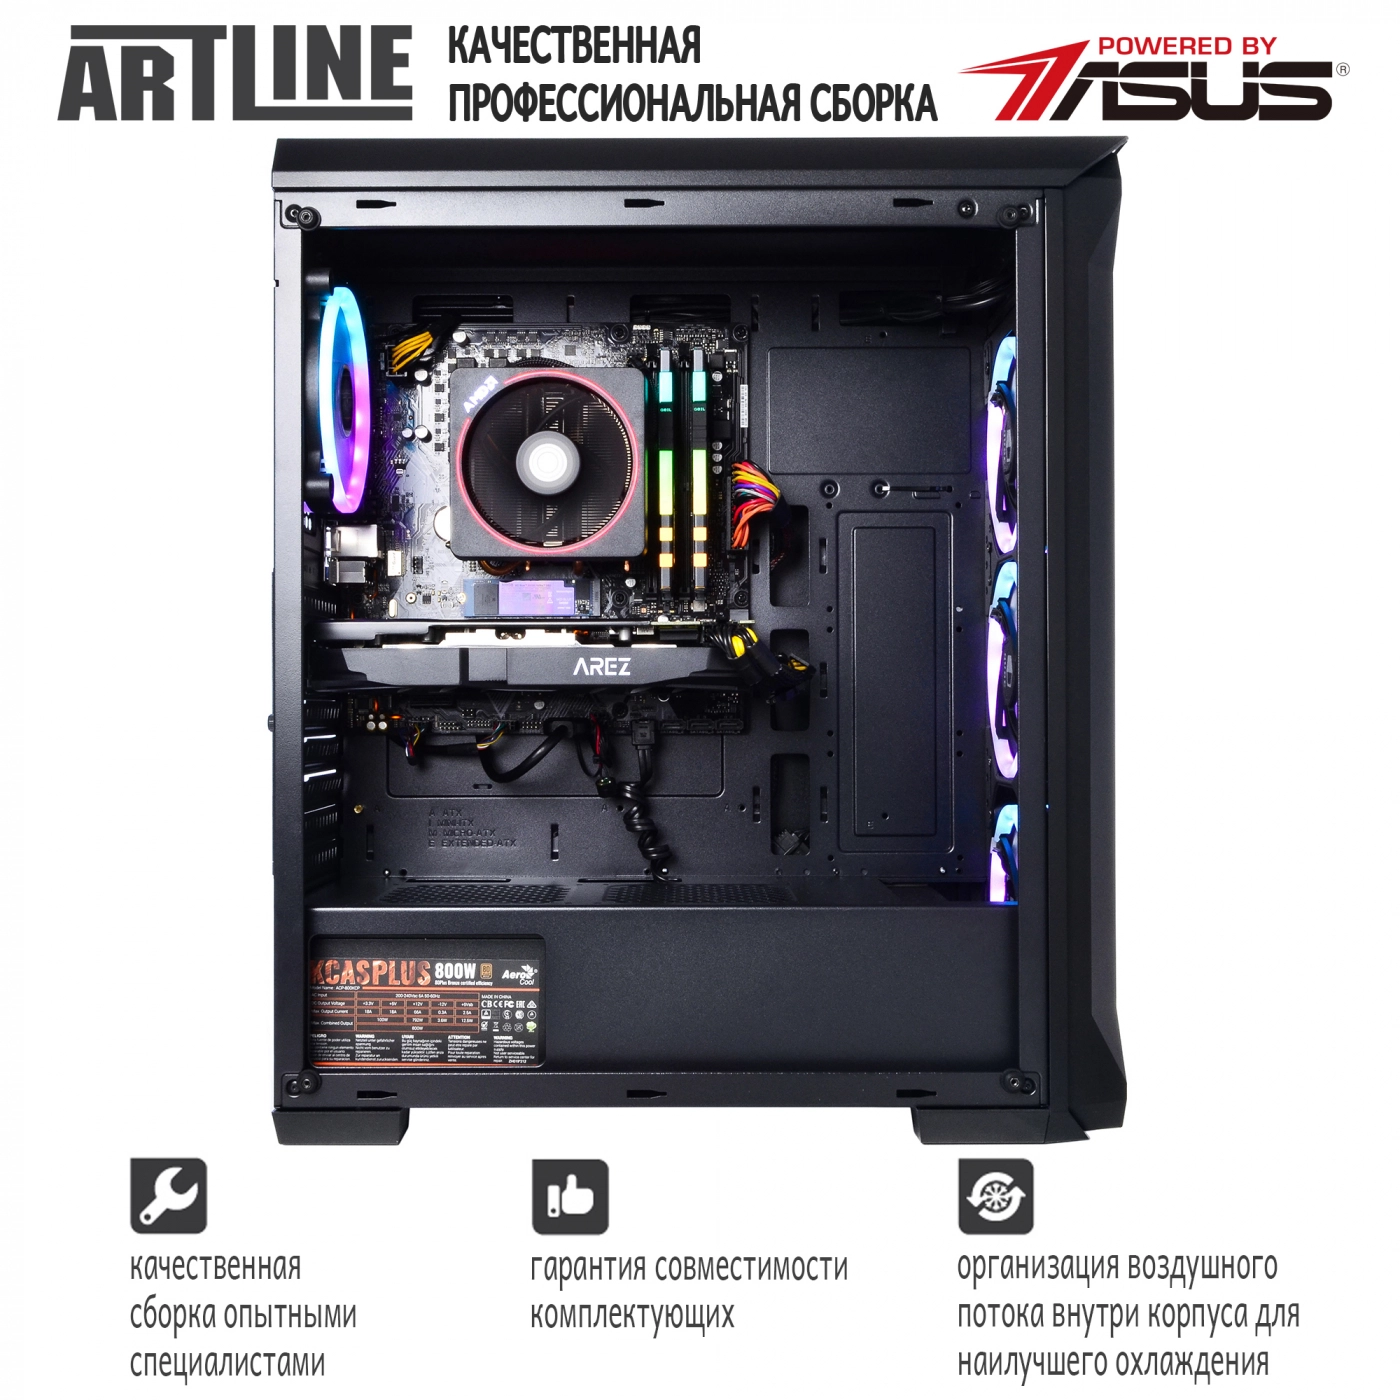 Купить Компьютер ARTLINE Gaming X63v17 - фото 4